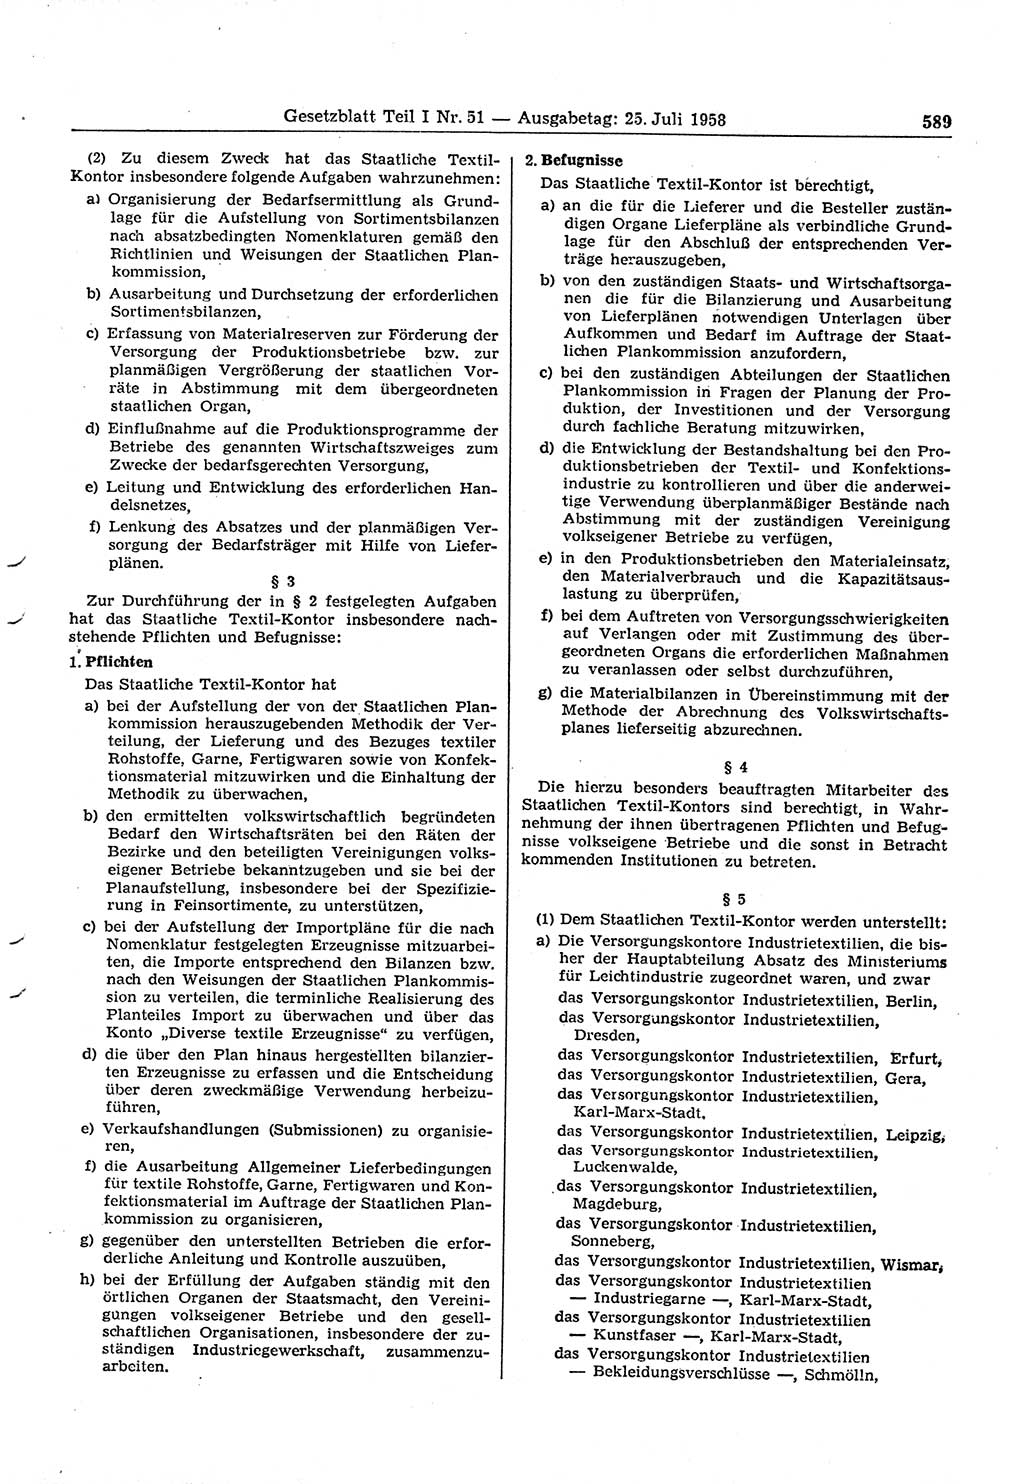 Gesetzblatt (GBl.) der Deutschen Demokratischen Republik (DDR) Teil Ⅰ 1958, Seite 589 (GBl. DDR Ⅰ 1958, S. 589)